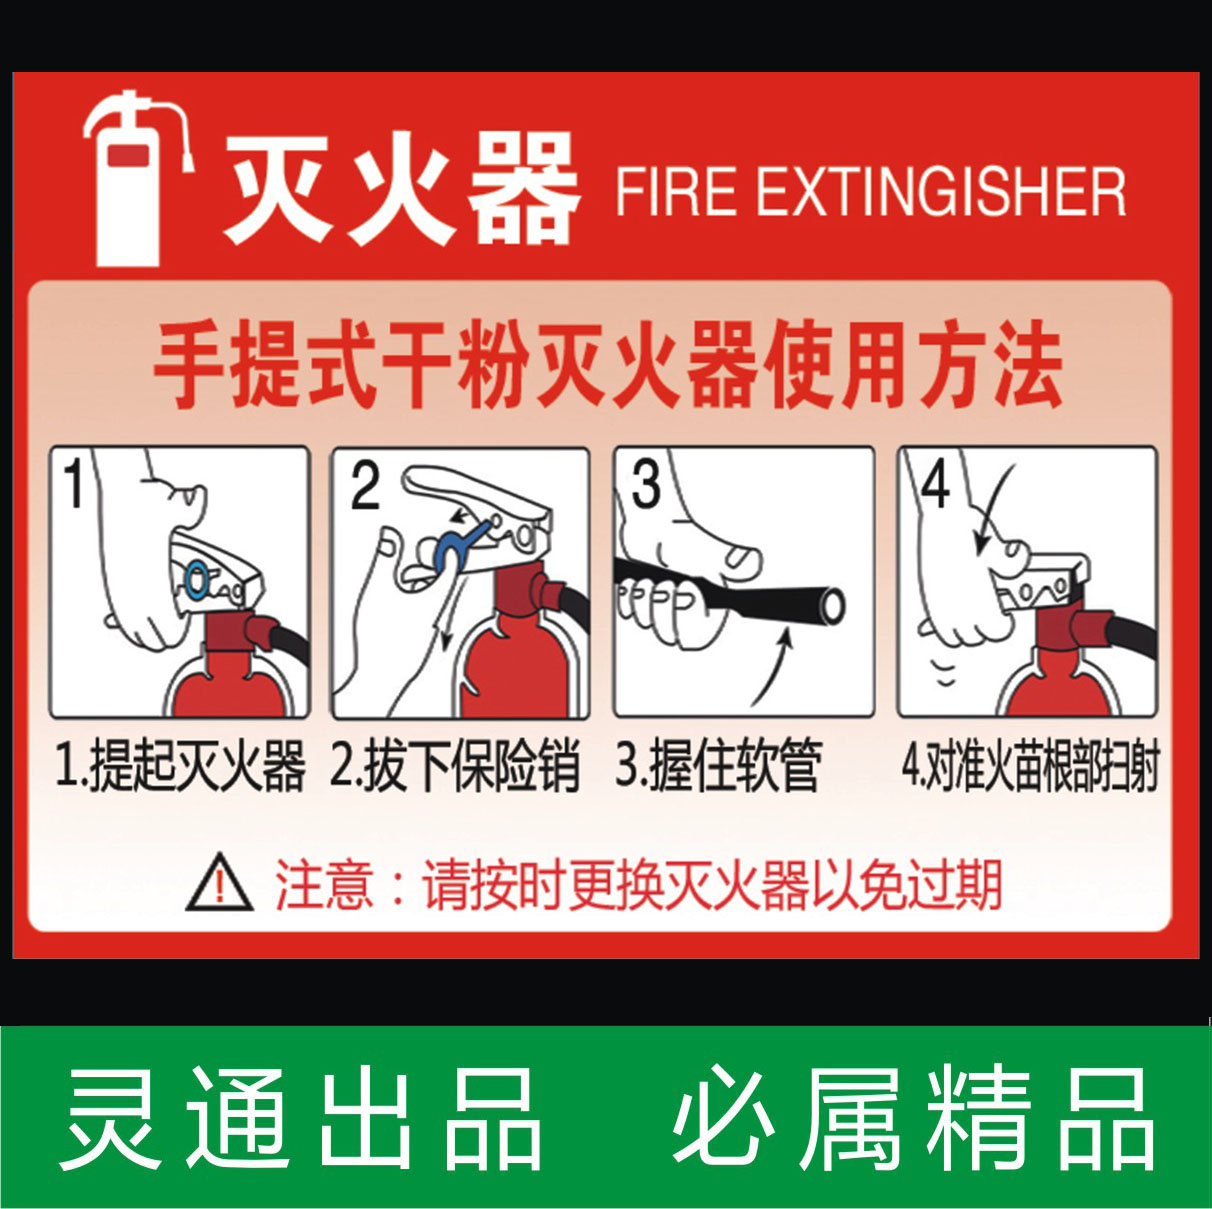 手提式干粉灭火器消火栓使用方法贴纸 消防安全标识标贴警示牌